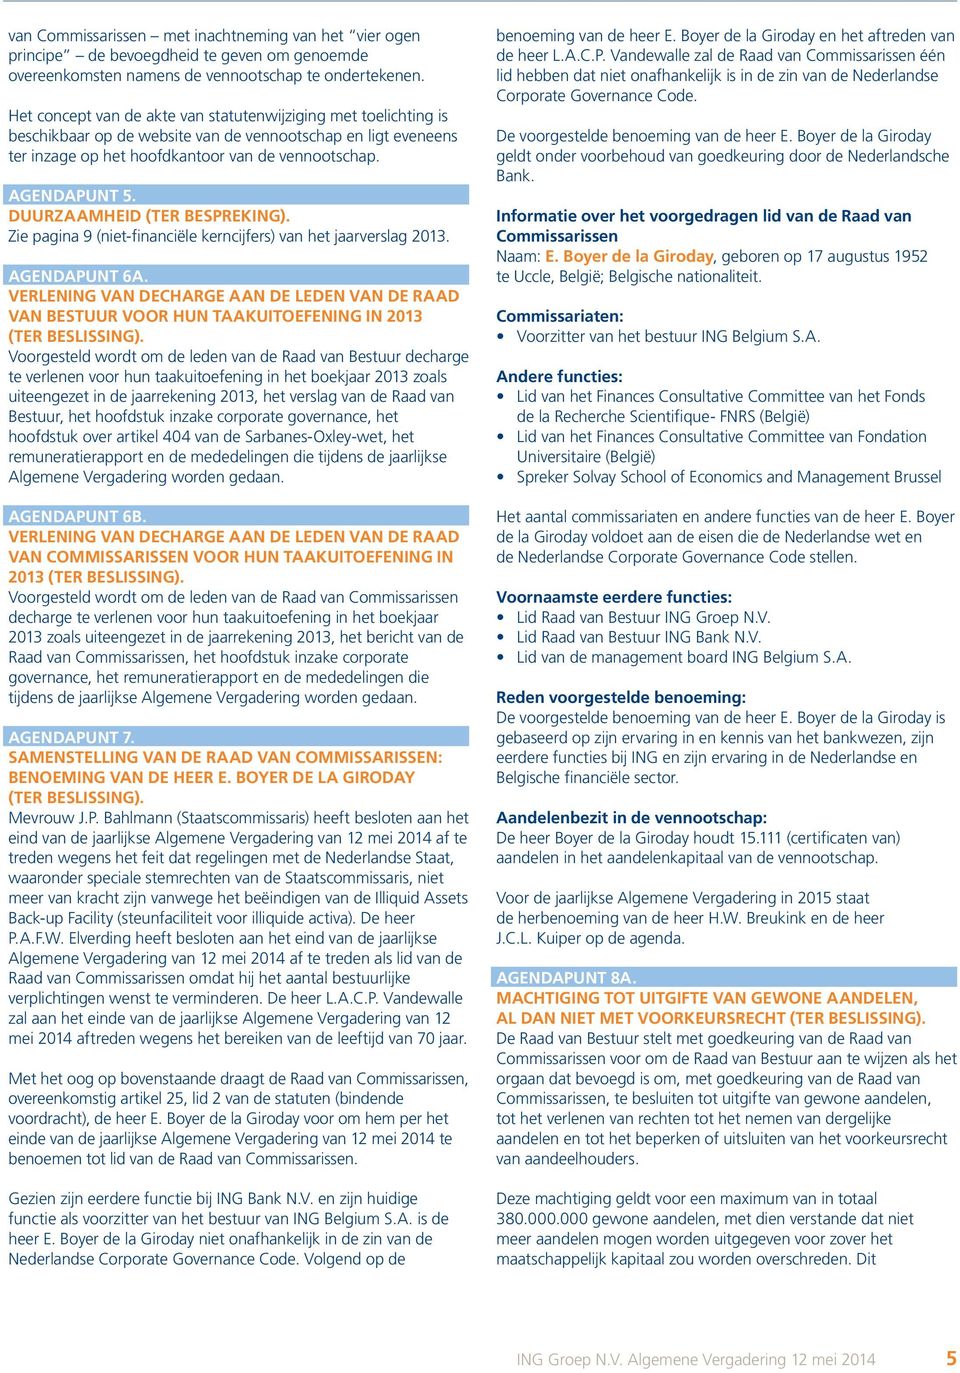 Duurzaamheid (ter bespreking). Zie pagina 9 (niet-financiële kerncijfers) van het jaarverslag 2013. Agendapunt 6A.